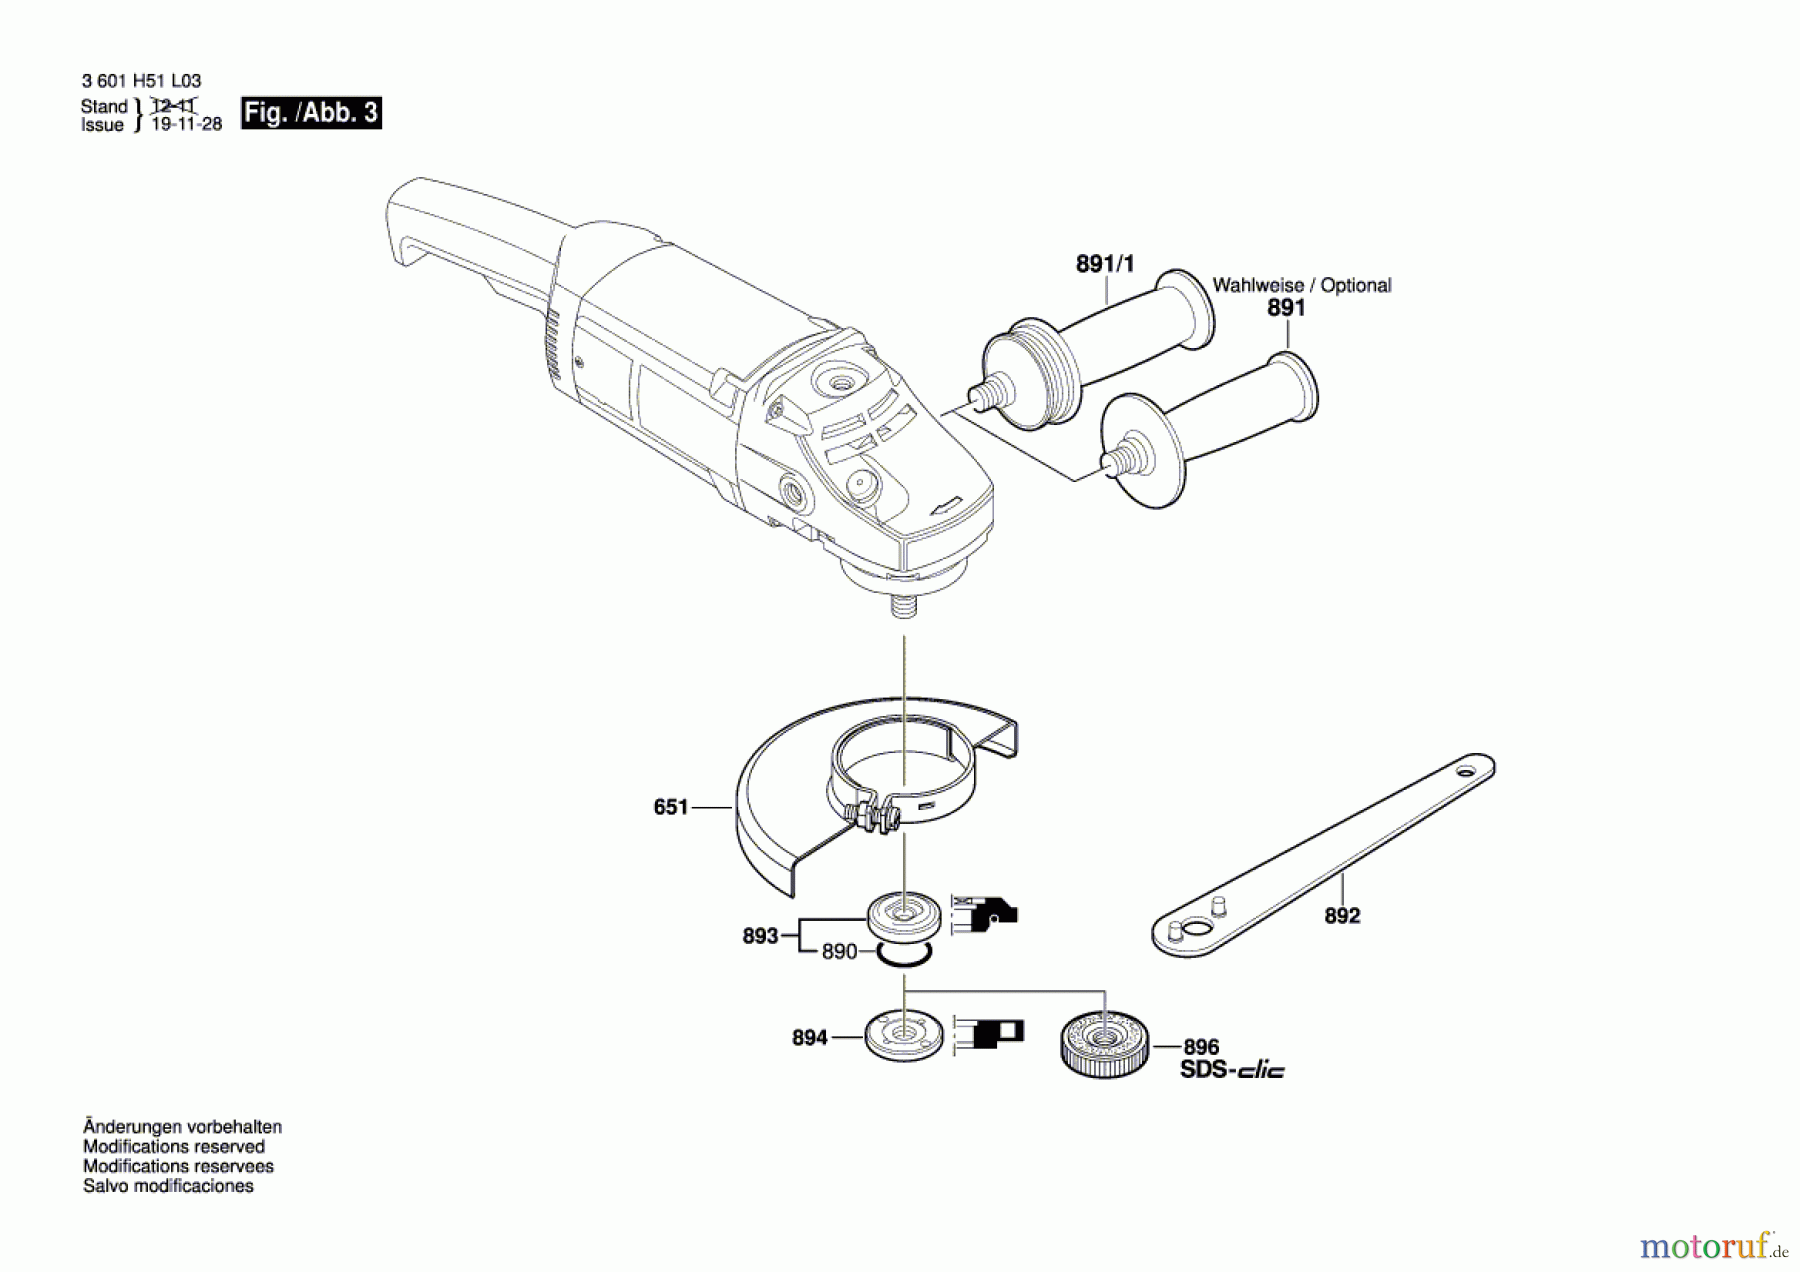  Bosch Werkzeug Winkelschleifer GWS 21-230 H Seite 3